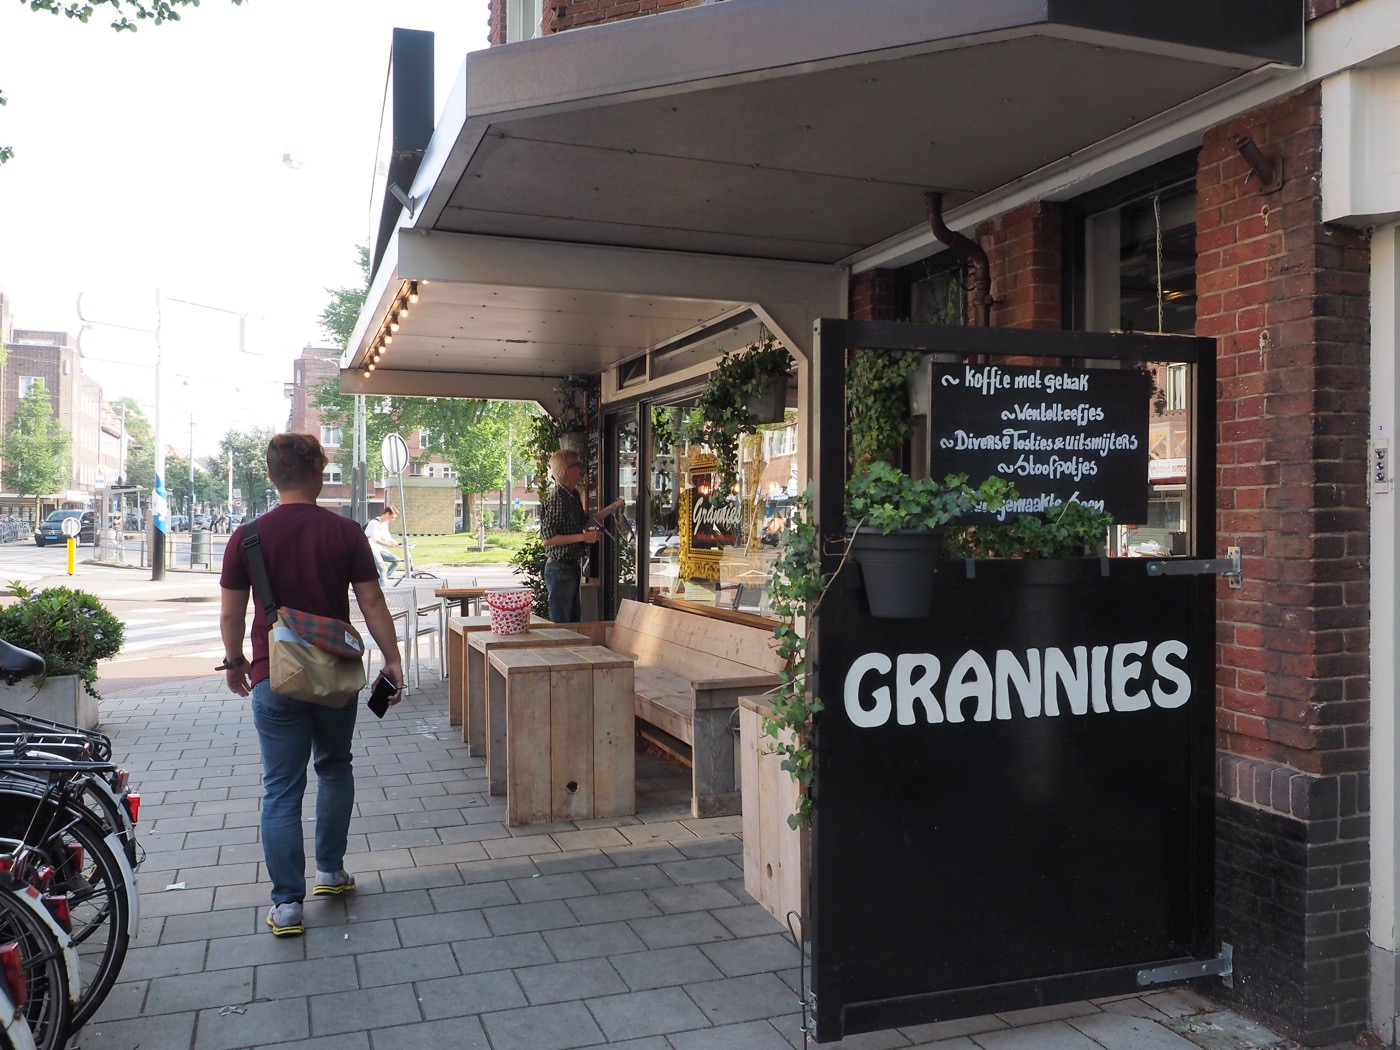 阿姆斯特丹美食 Grannies 荷蘭式驚人份量早午餐 - 一口冒險 Bitesized Adventure